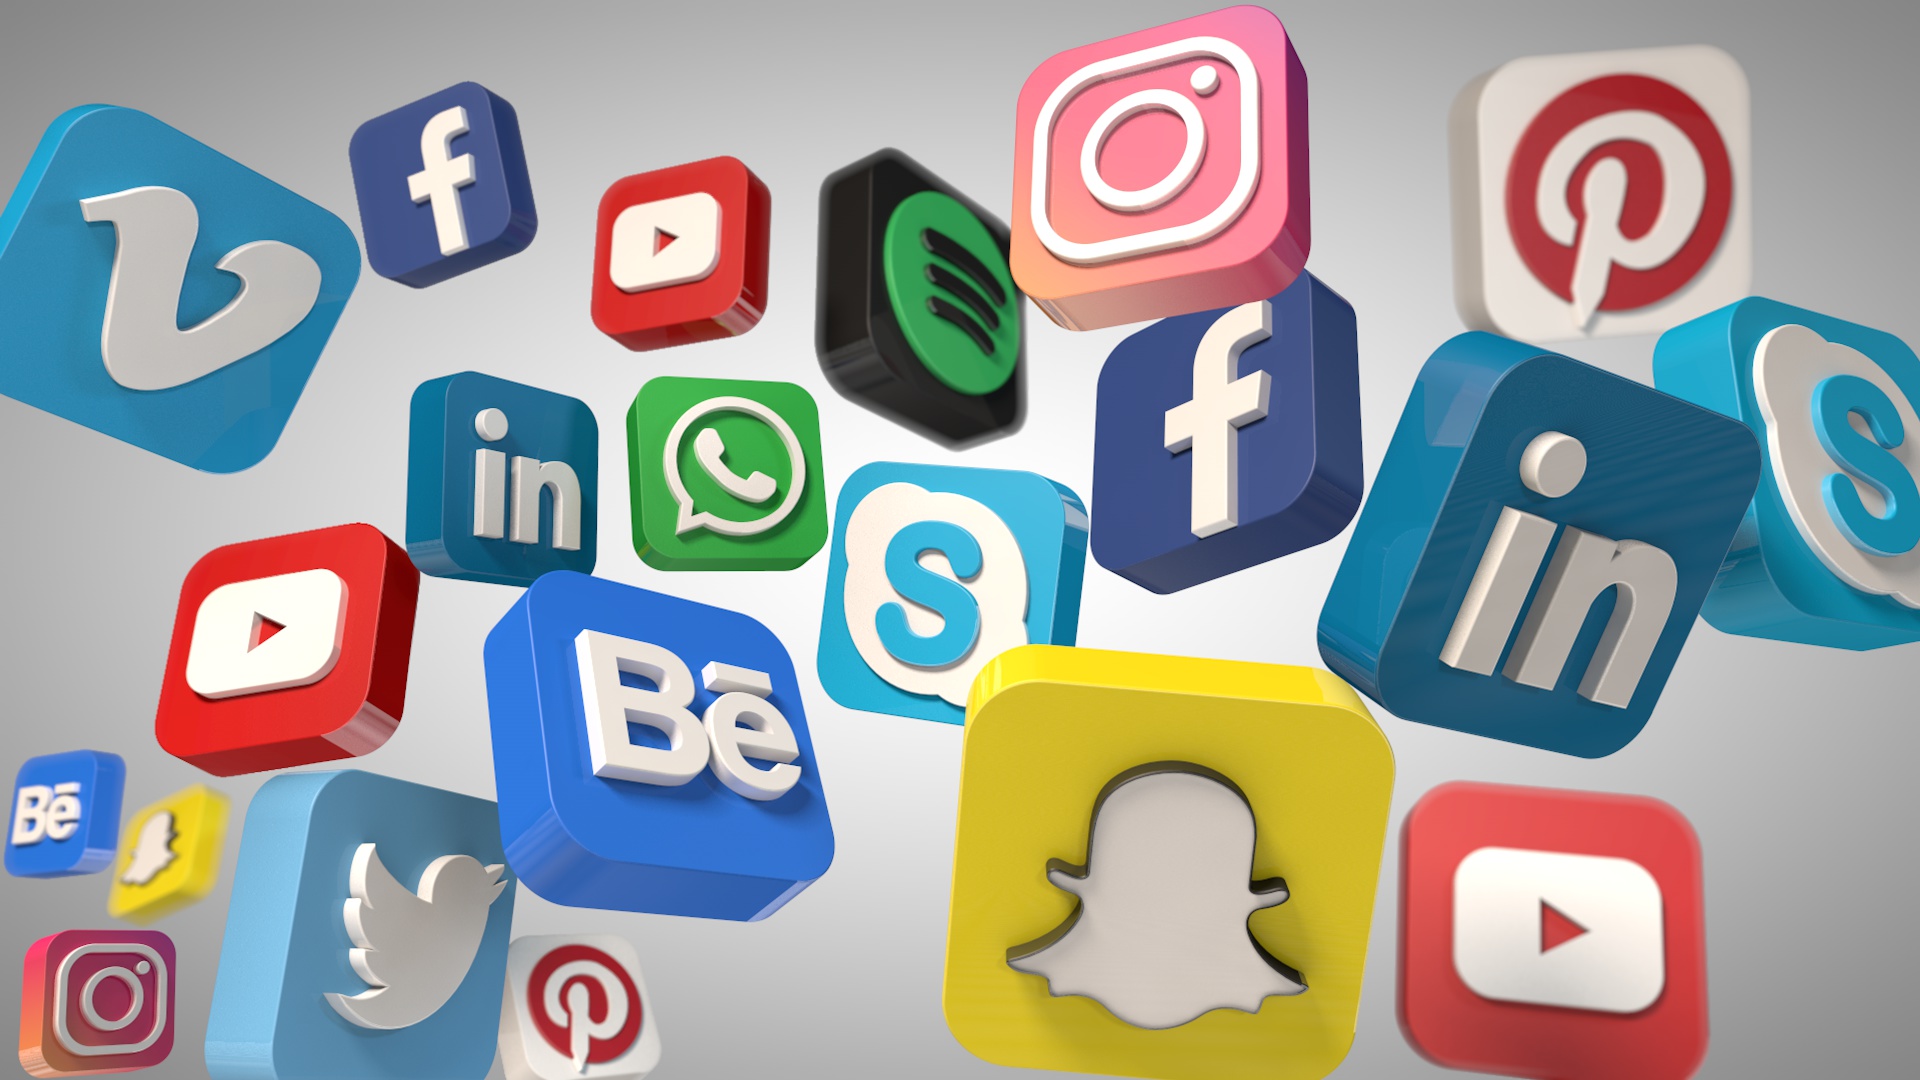 social media icons- top 10 social media apps 2021